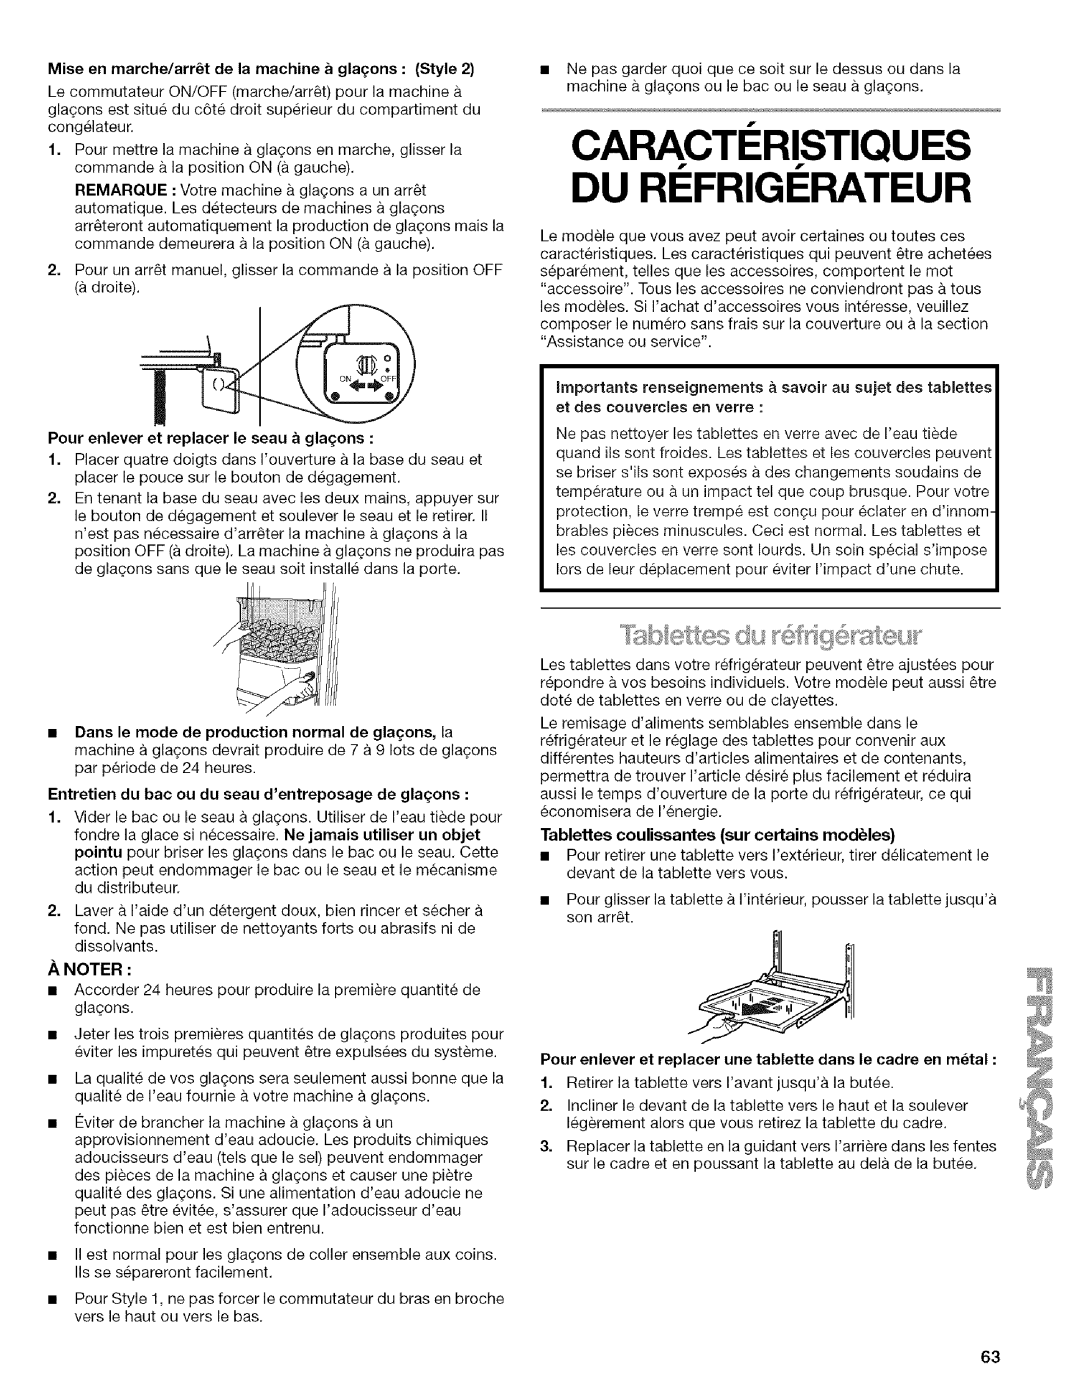 Kenmore 2205960 manual Du Ri Frigi Rateur, Caracteristiques 